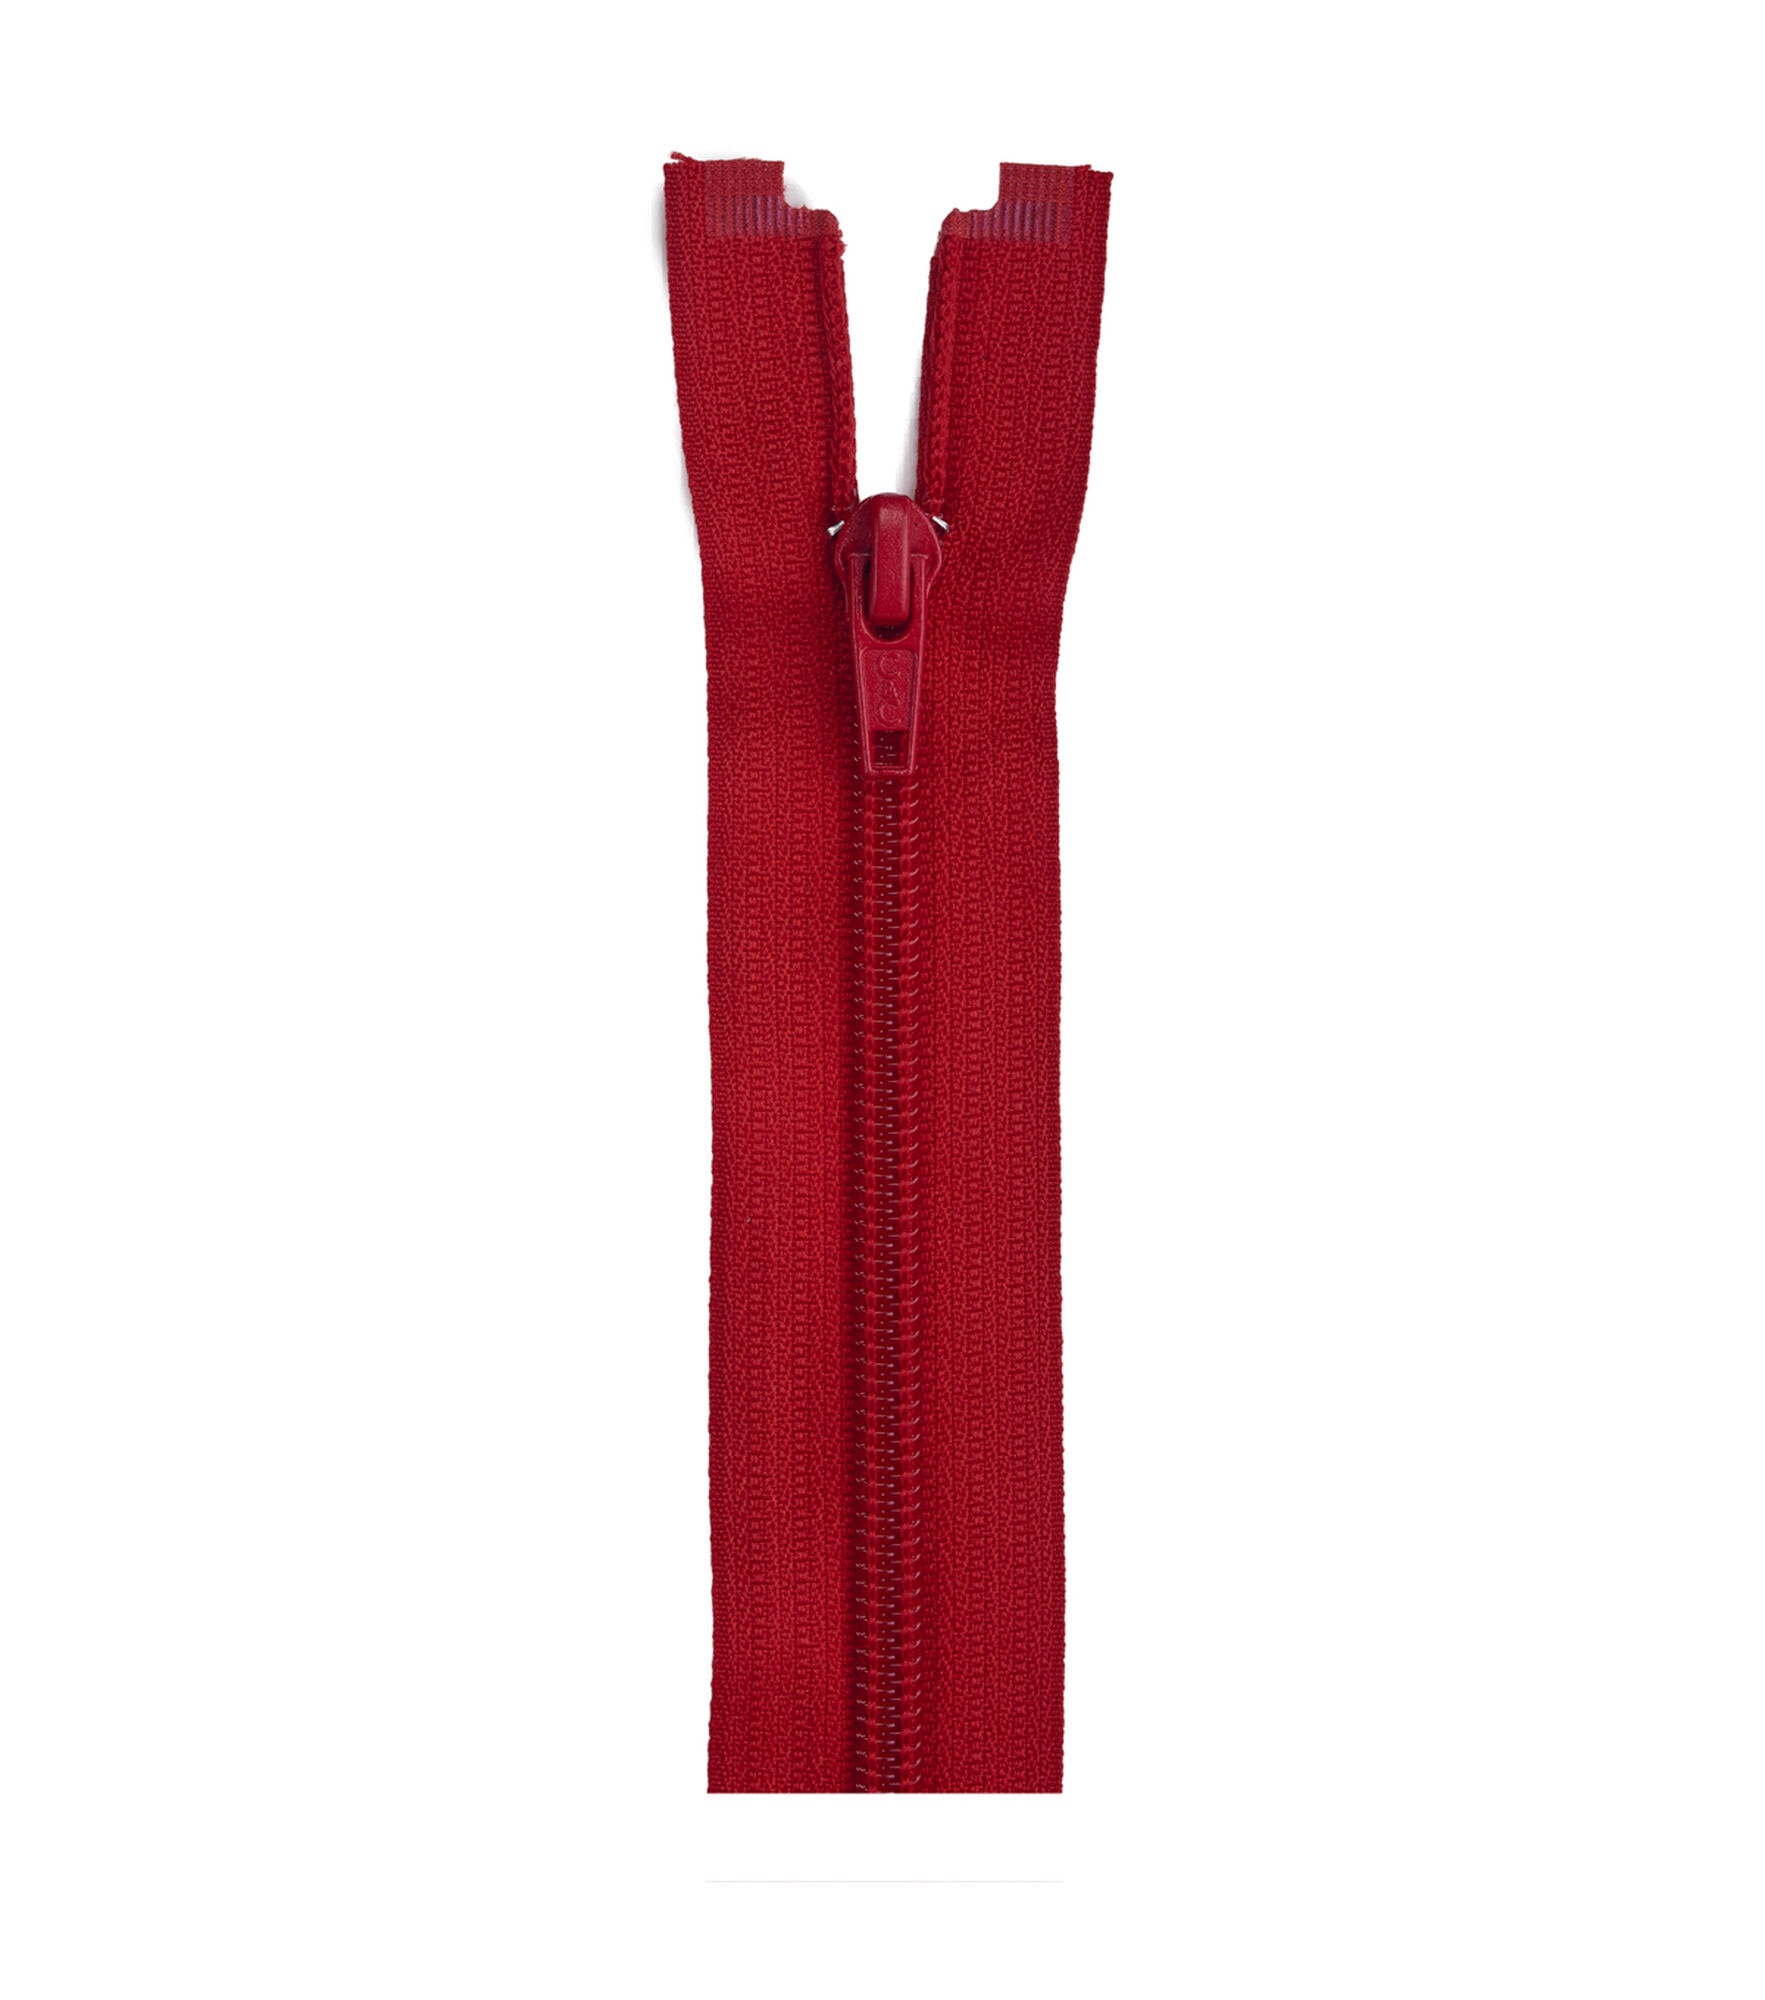 Coats & Clark Coil Separating Zipper 14", Red, hi-res